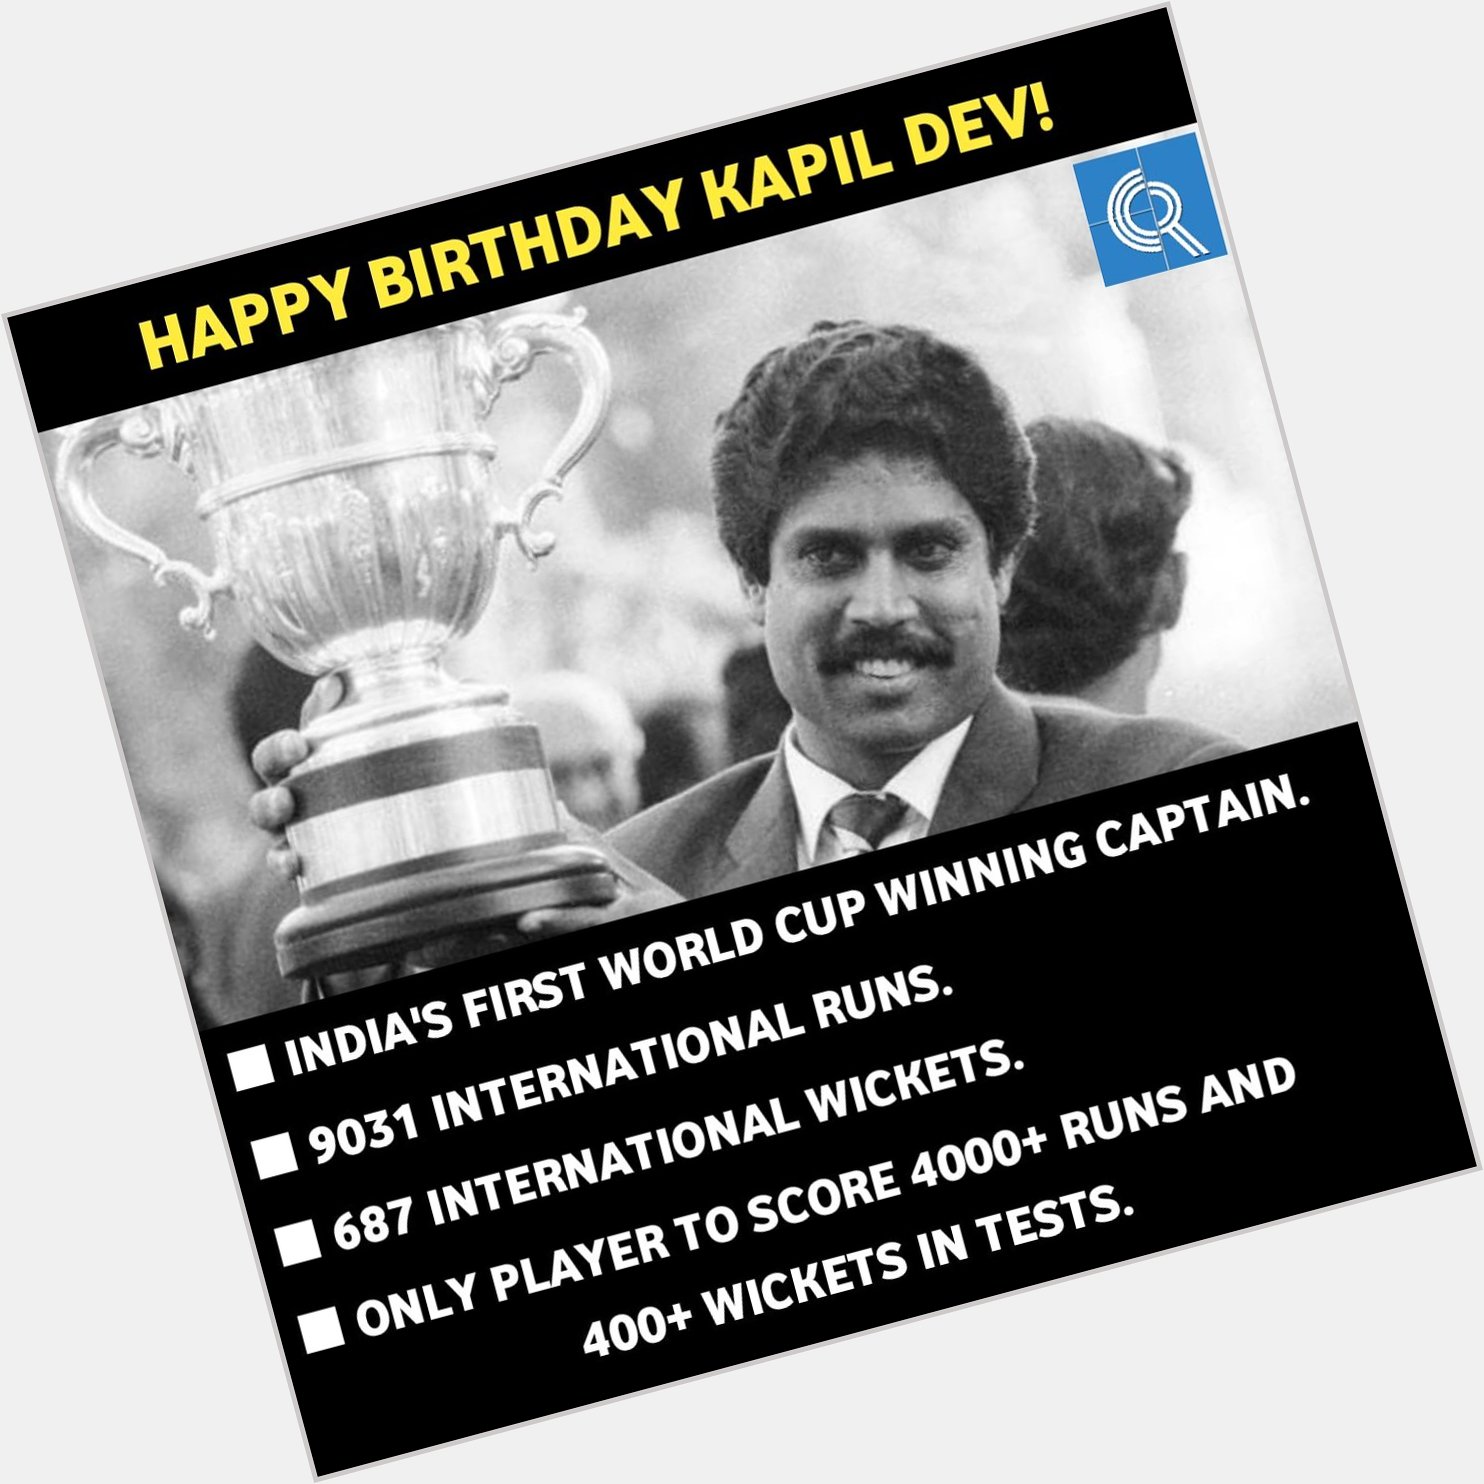 Happy Birthday Kapil Dev! 